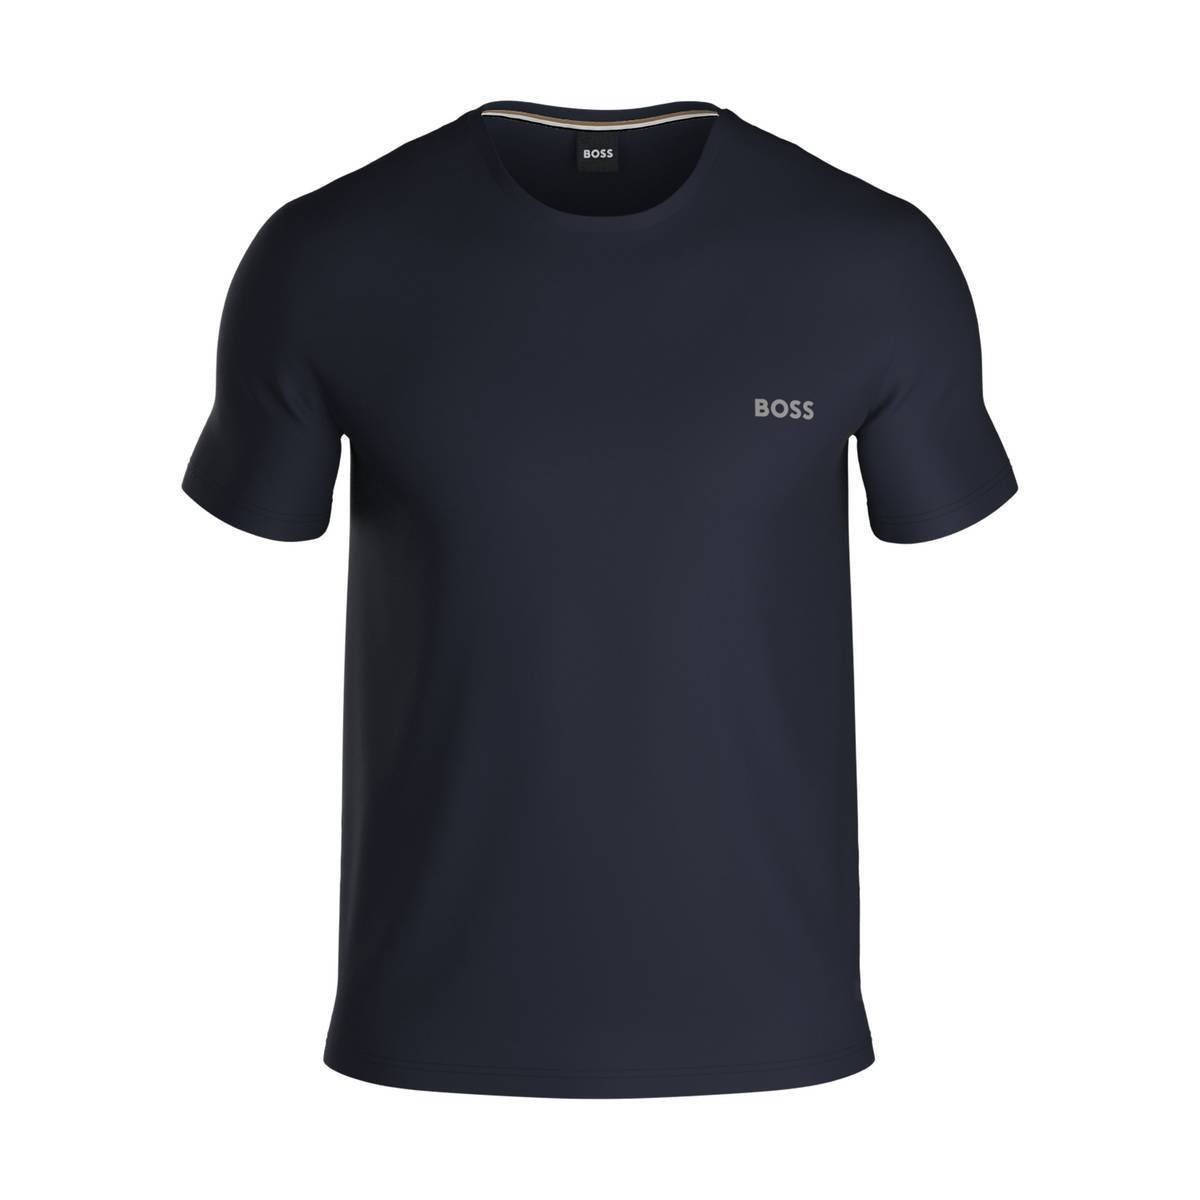 BOSS T-Shirt Herren T-Shirt - Mix&Match, Unterziehshirt Dunkelblau